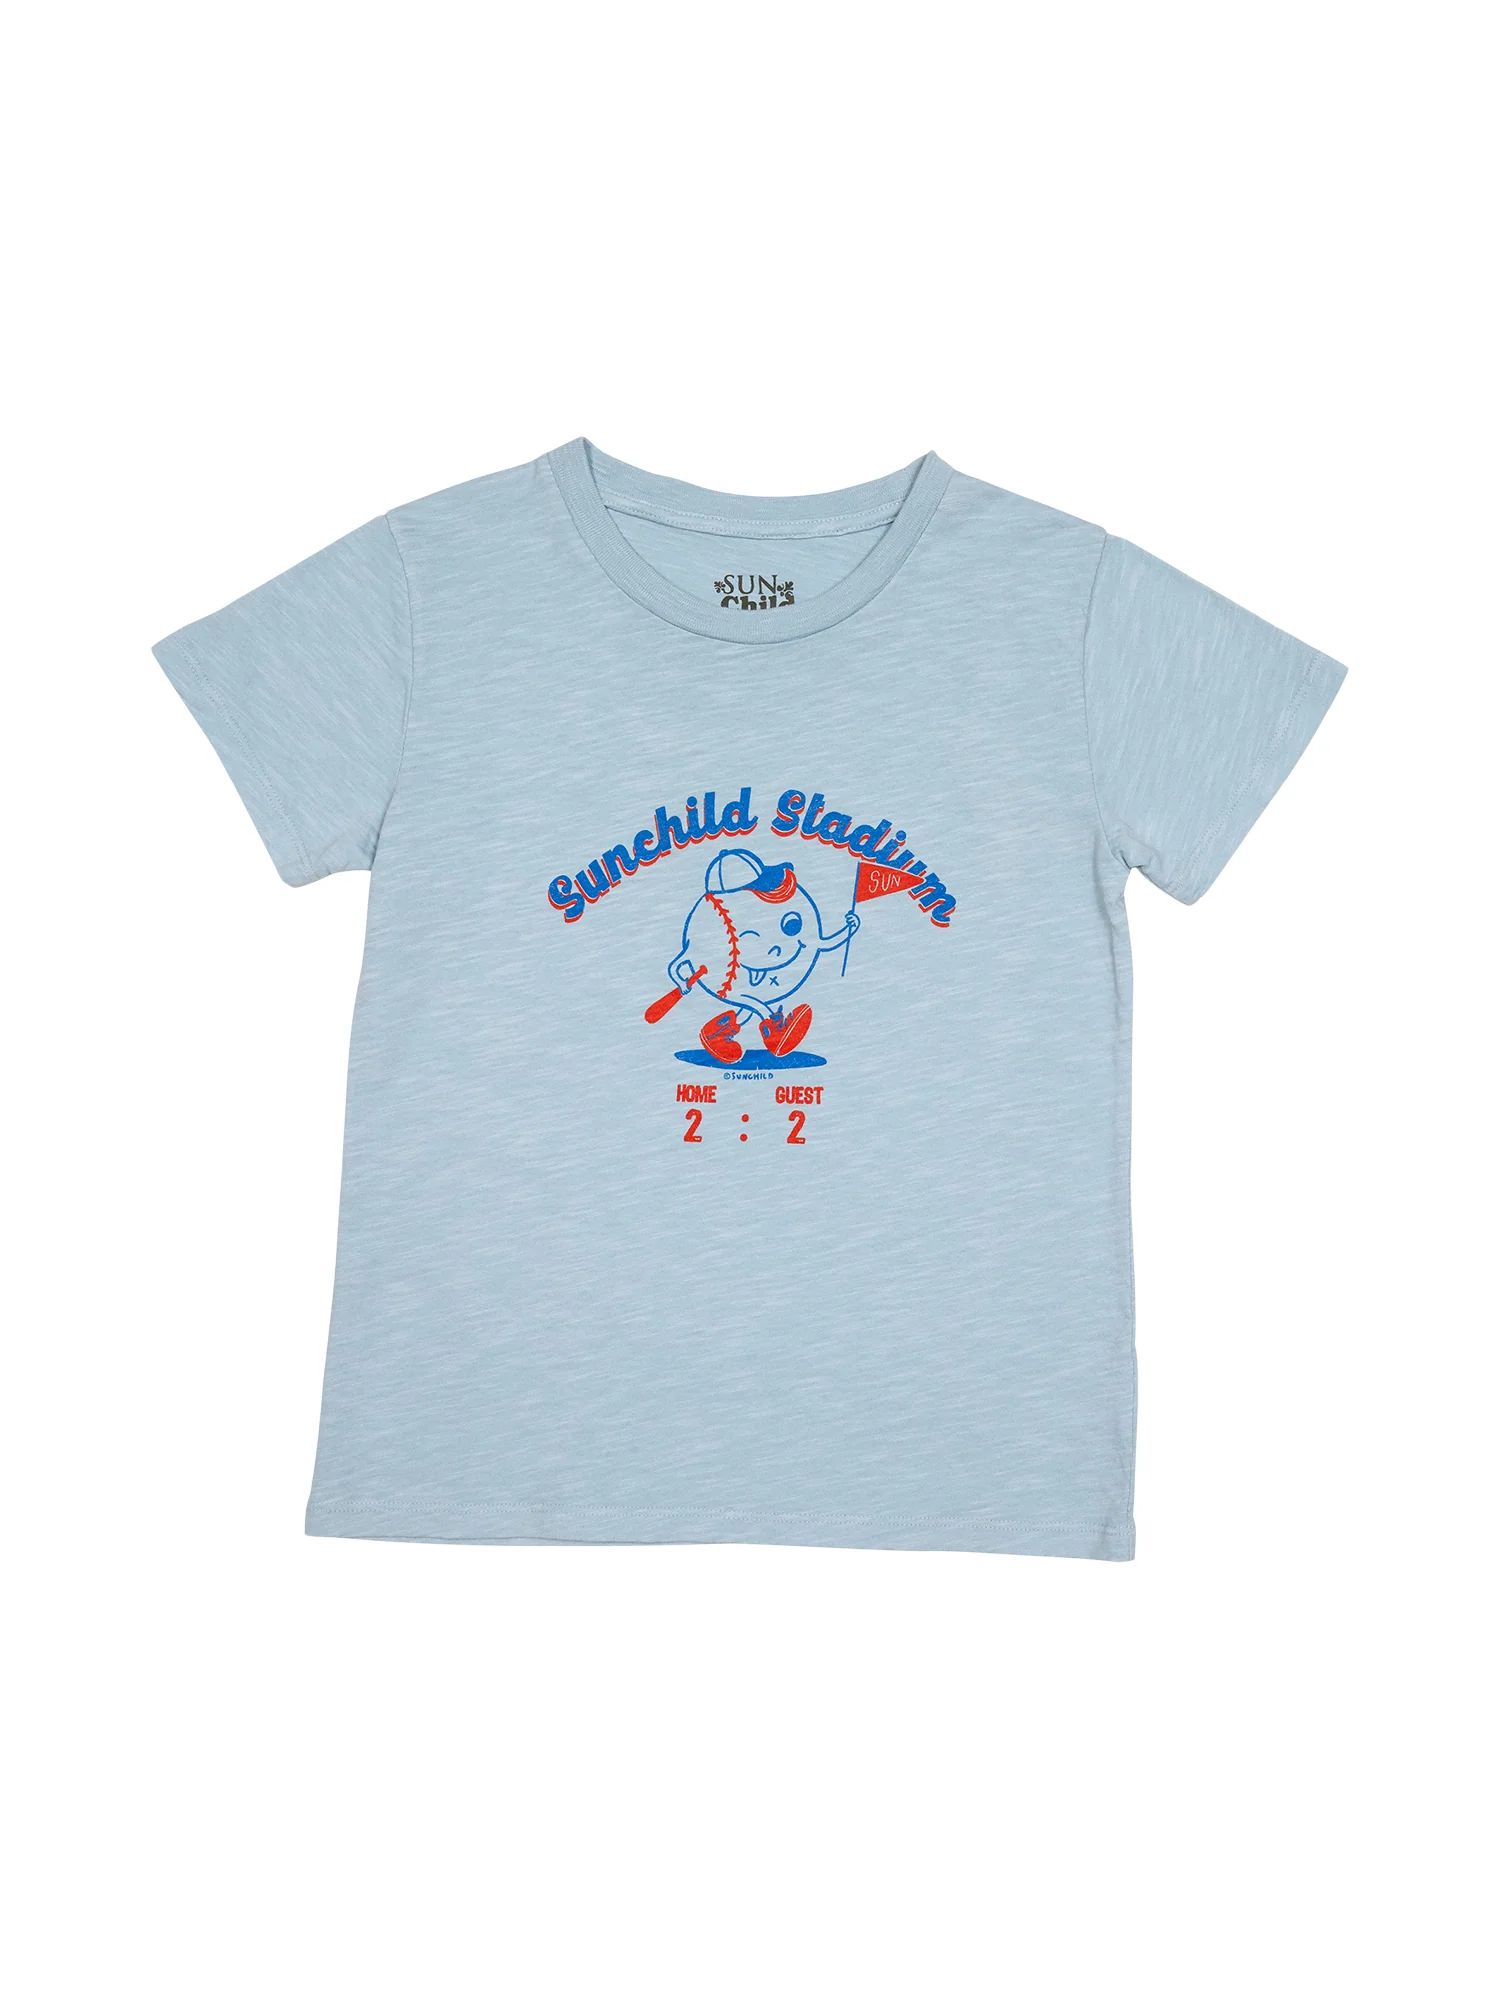 Mr. Baseball T-Shirt | Danrie